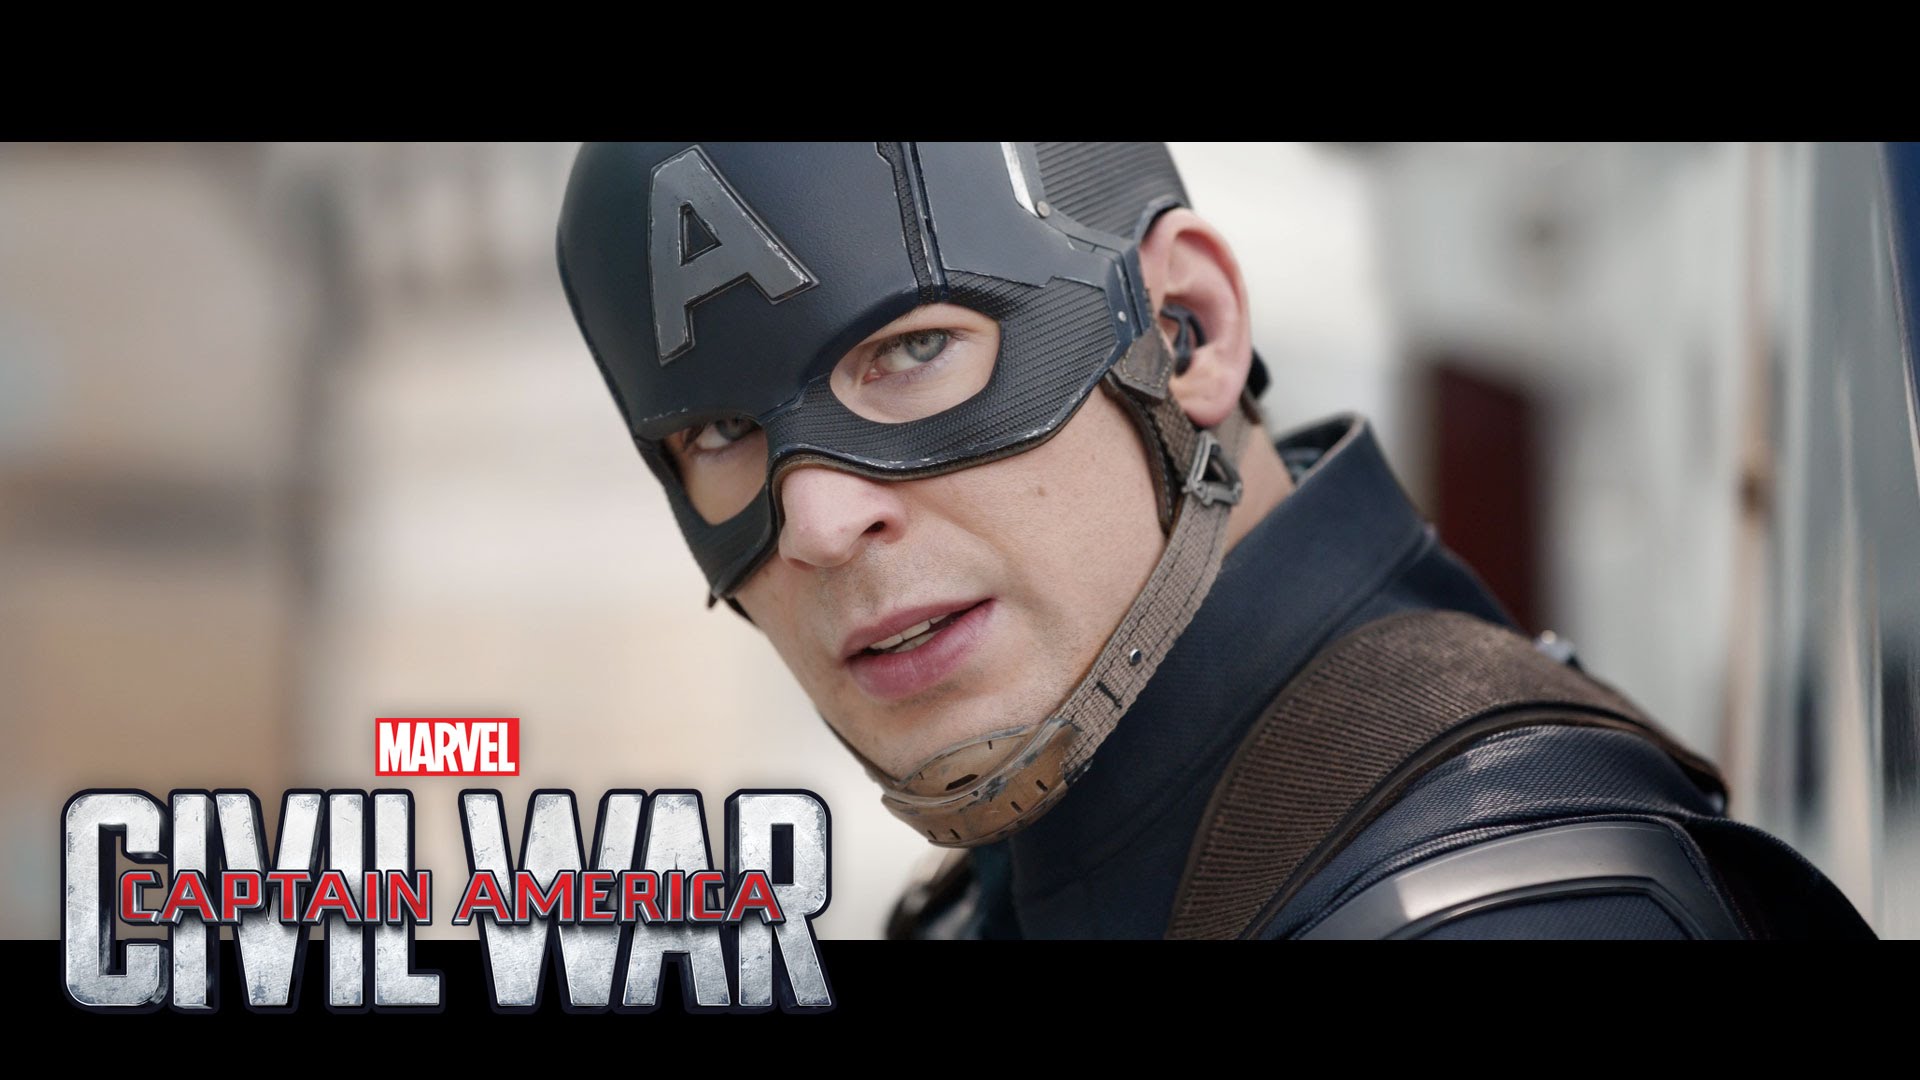 Marvel’s Captain America: Civil War – Trailer 2